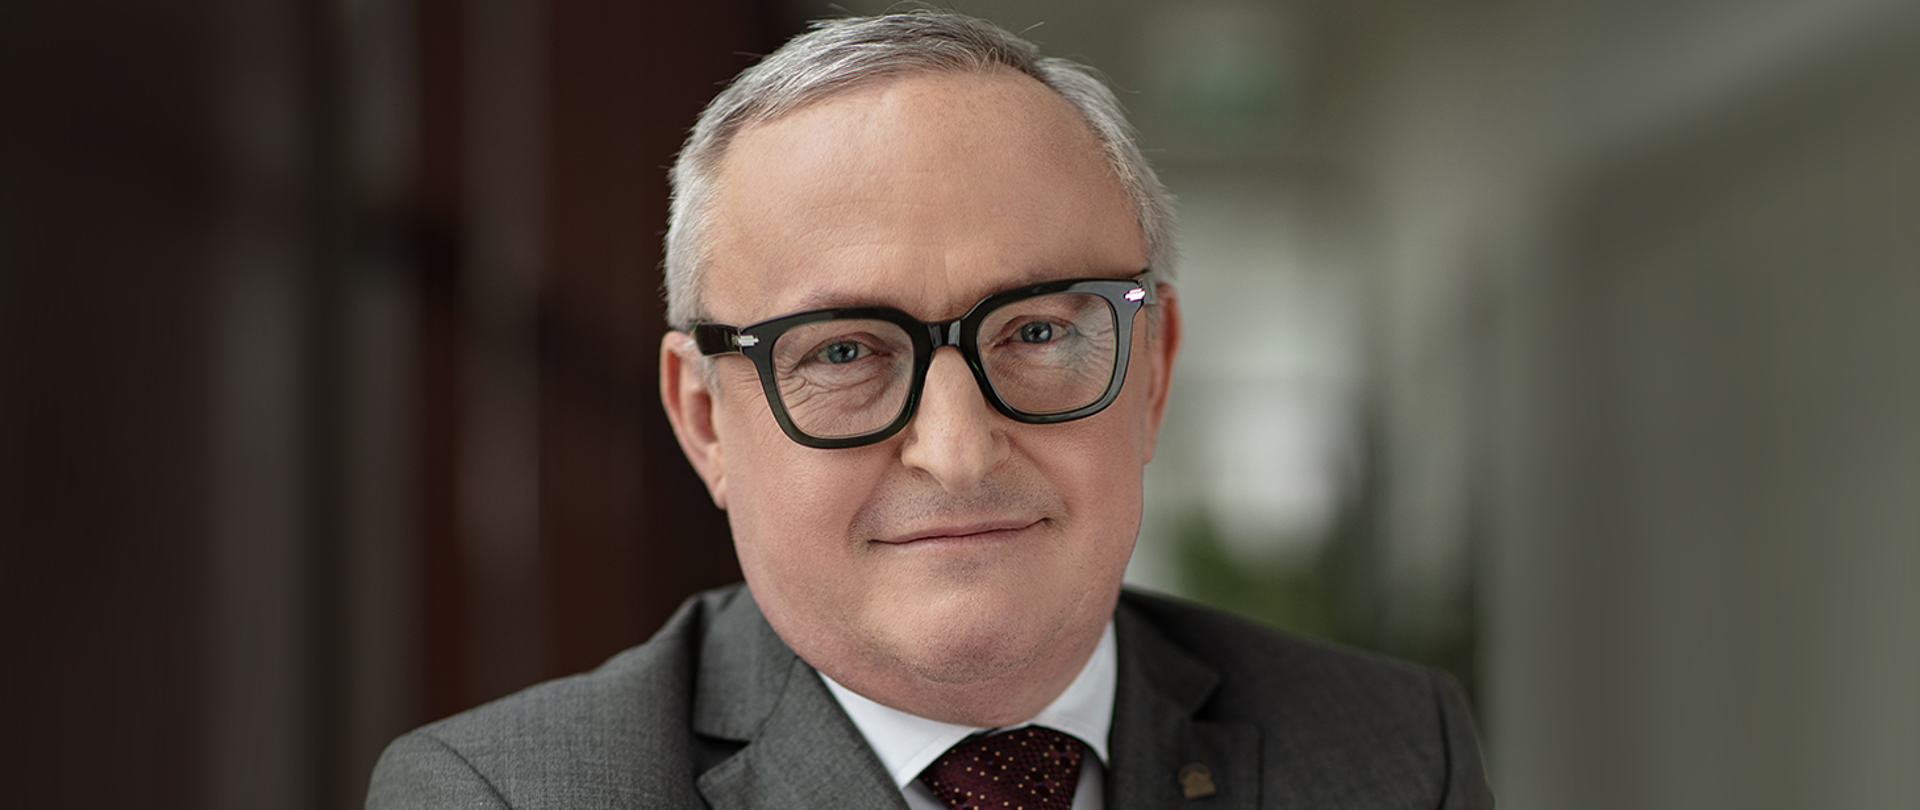 Paweł Augustyn – Zastępca Prezesa Zarządu